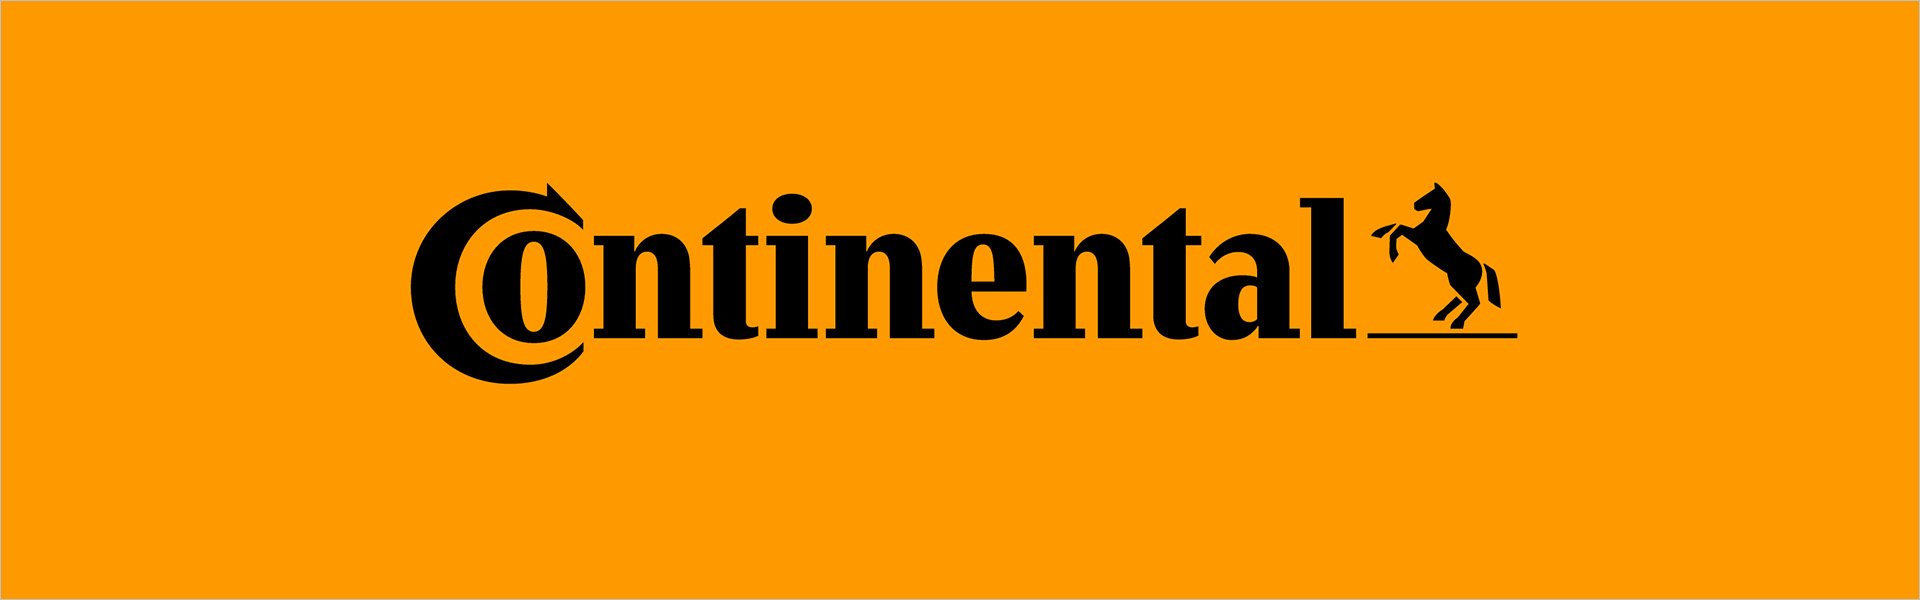 Continental ContiSportContact, 3 235/35R19 91 Y XL FR 